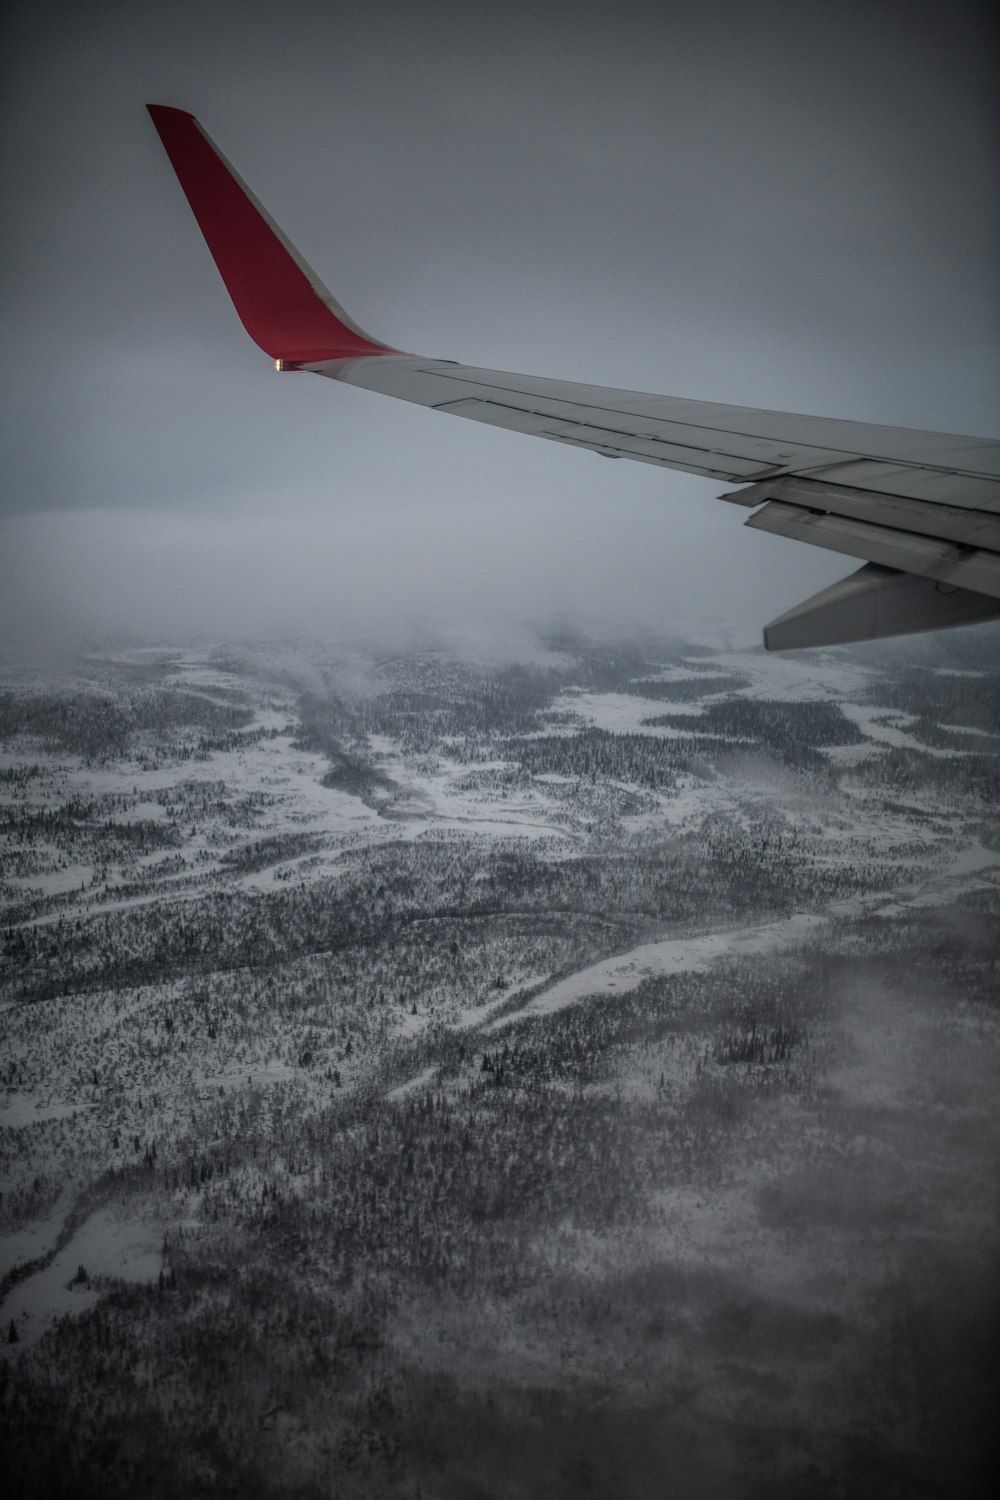 a asa de um avião sobrevoando uma paisagem nevada